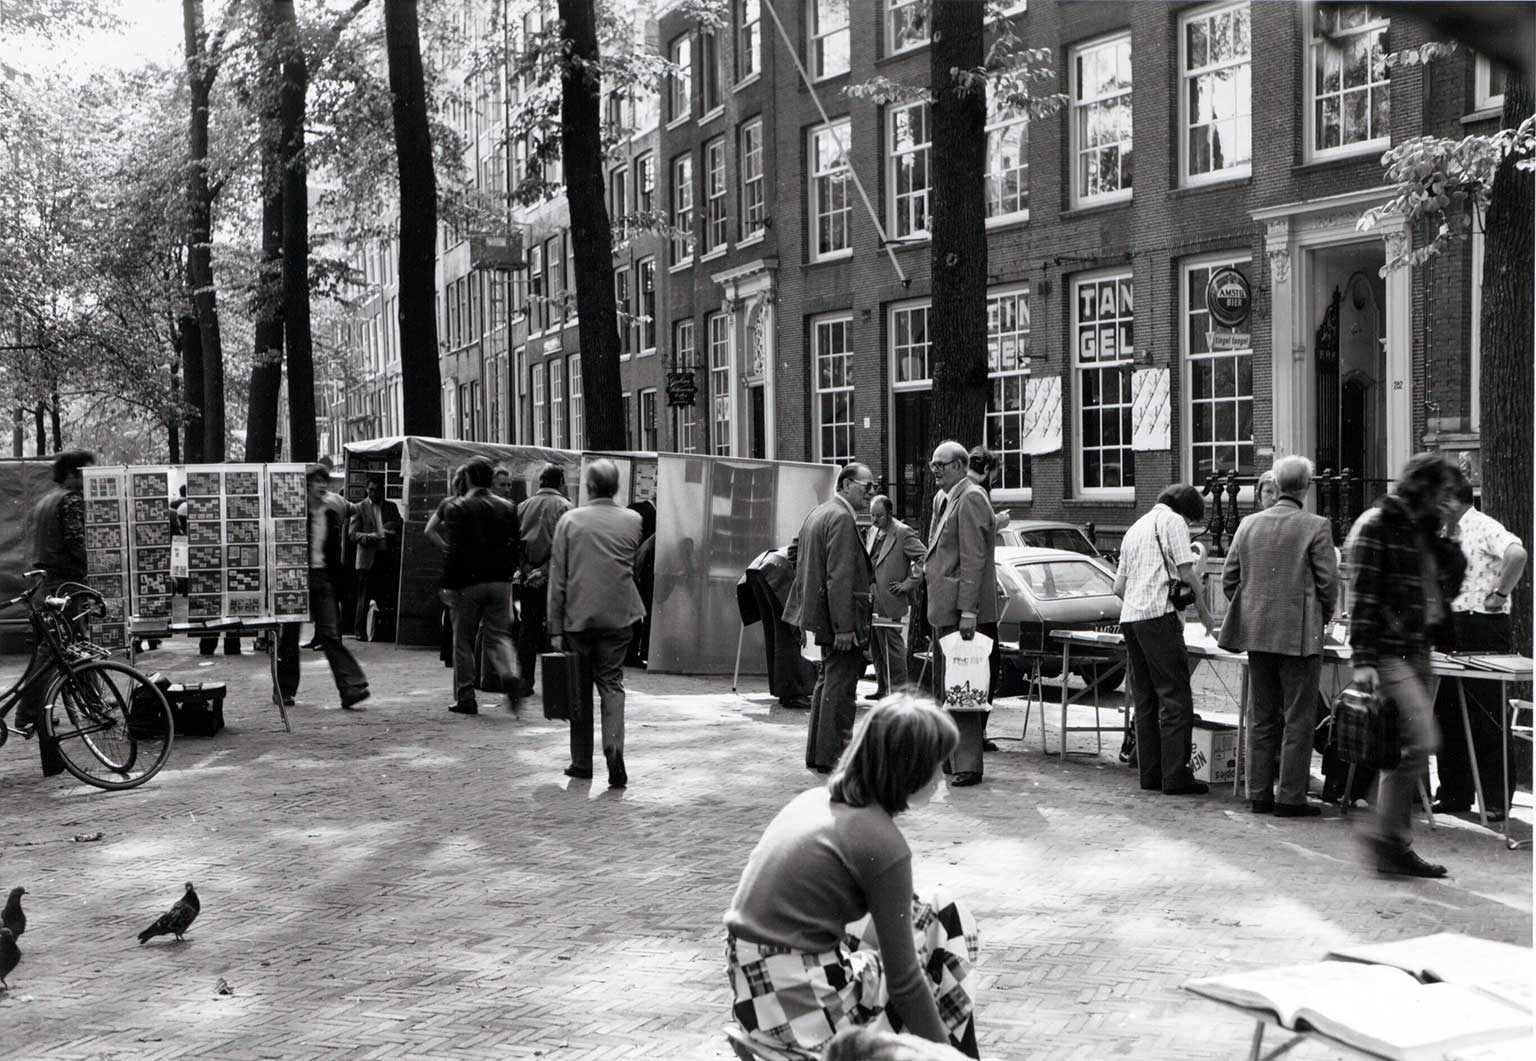 Postzegelmarkt on Nieuwezijds Voorburgwal between Rosmarijnsteeg and Wijdesteeg in 1979